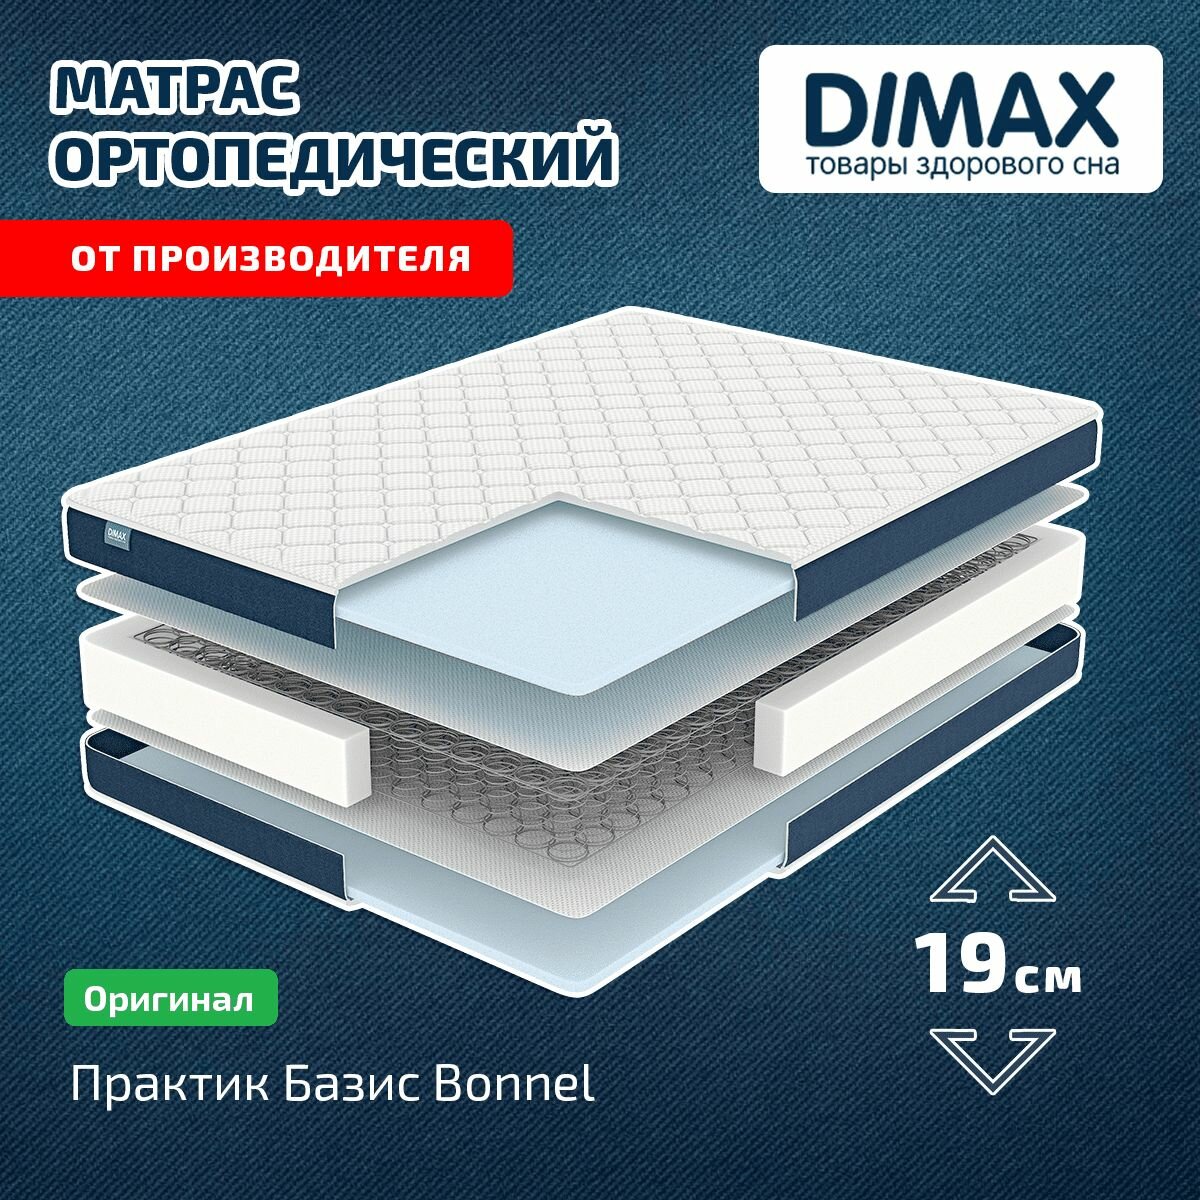 Матрас Dimax Практик Базис Bonnel 80x200